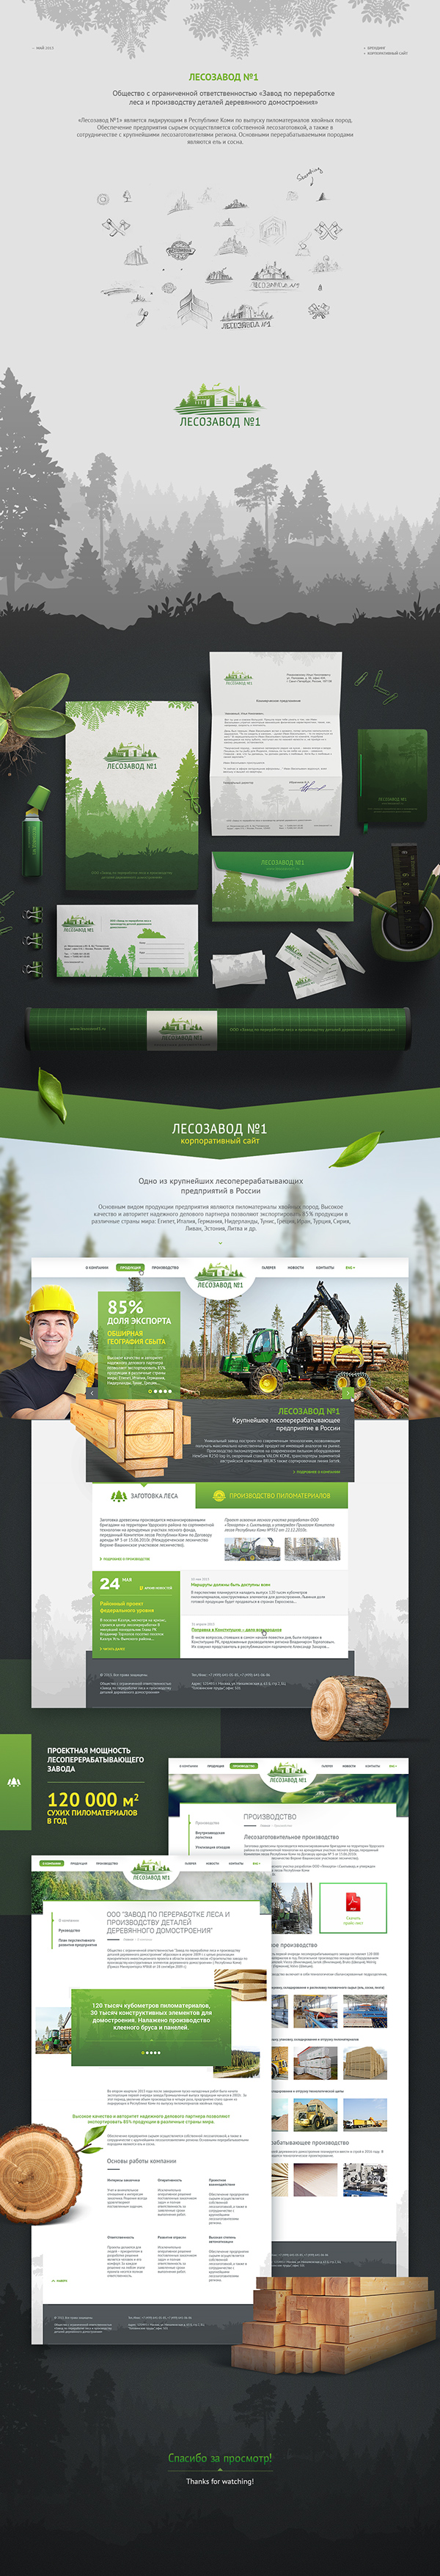 Sawmill #1 - Branding & Website design